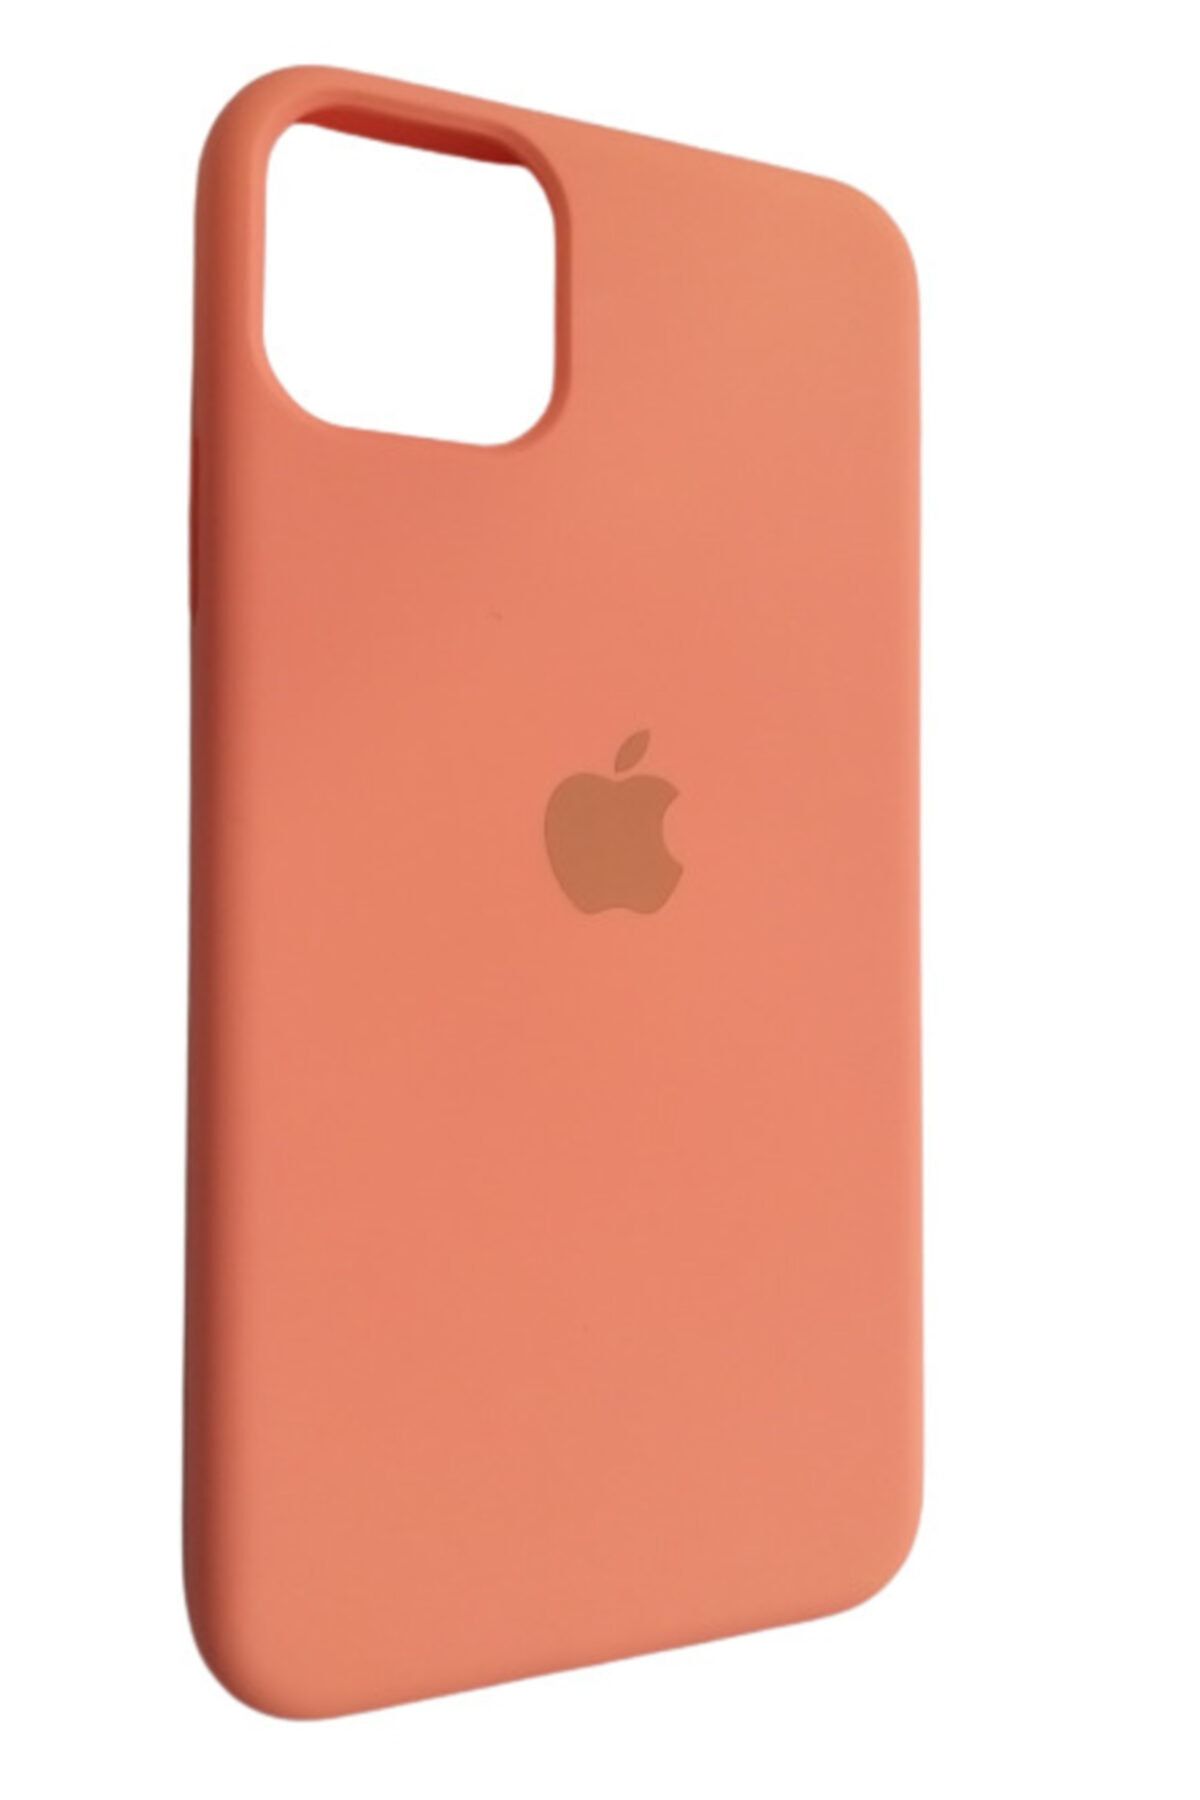 Pirok Store Iphone 11 Promax Turuncu / Orange Lansman Silikon Kılıf Içi Kadife Logolu